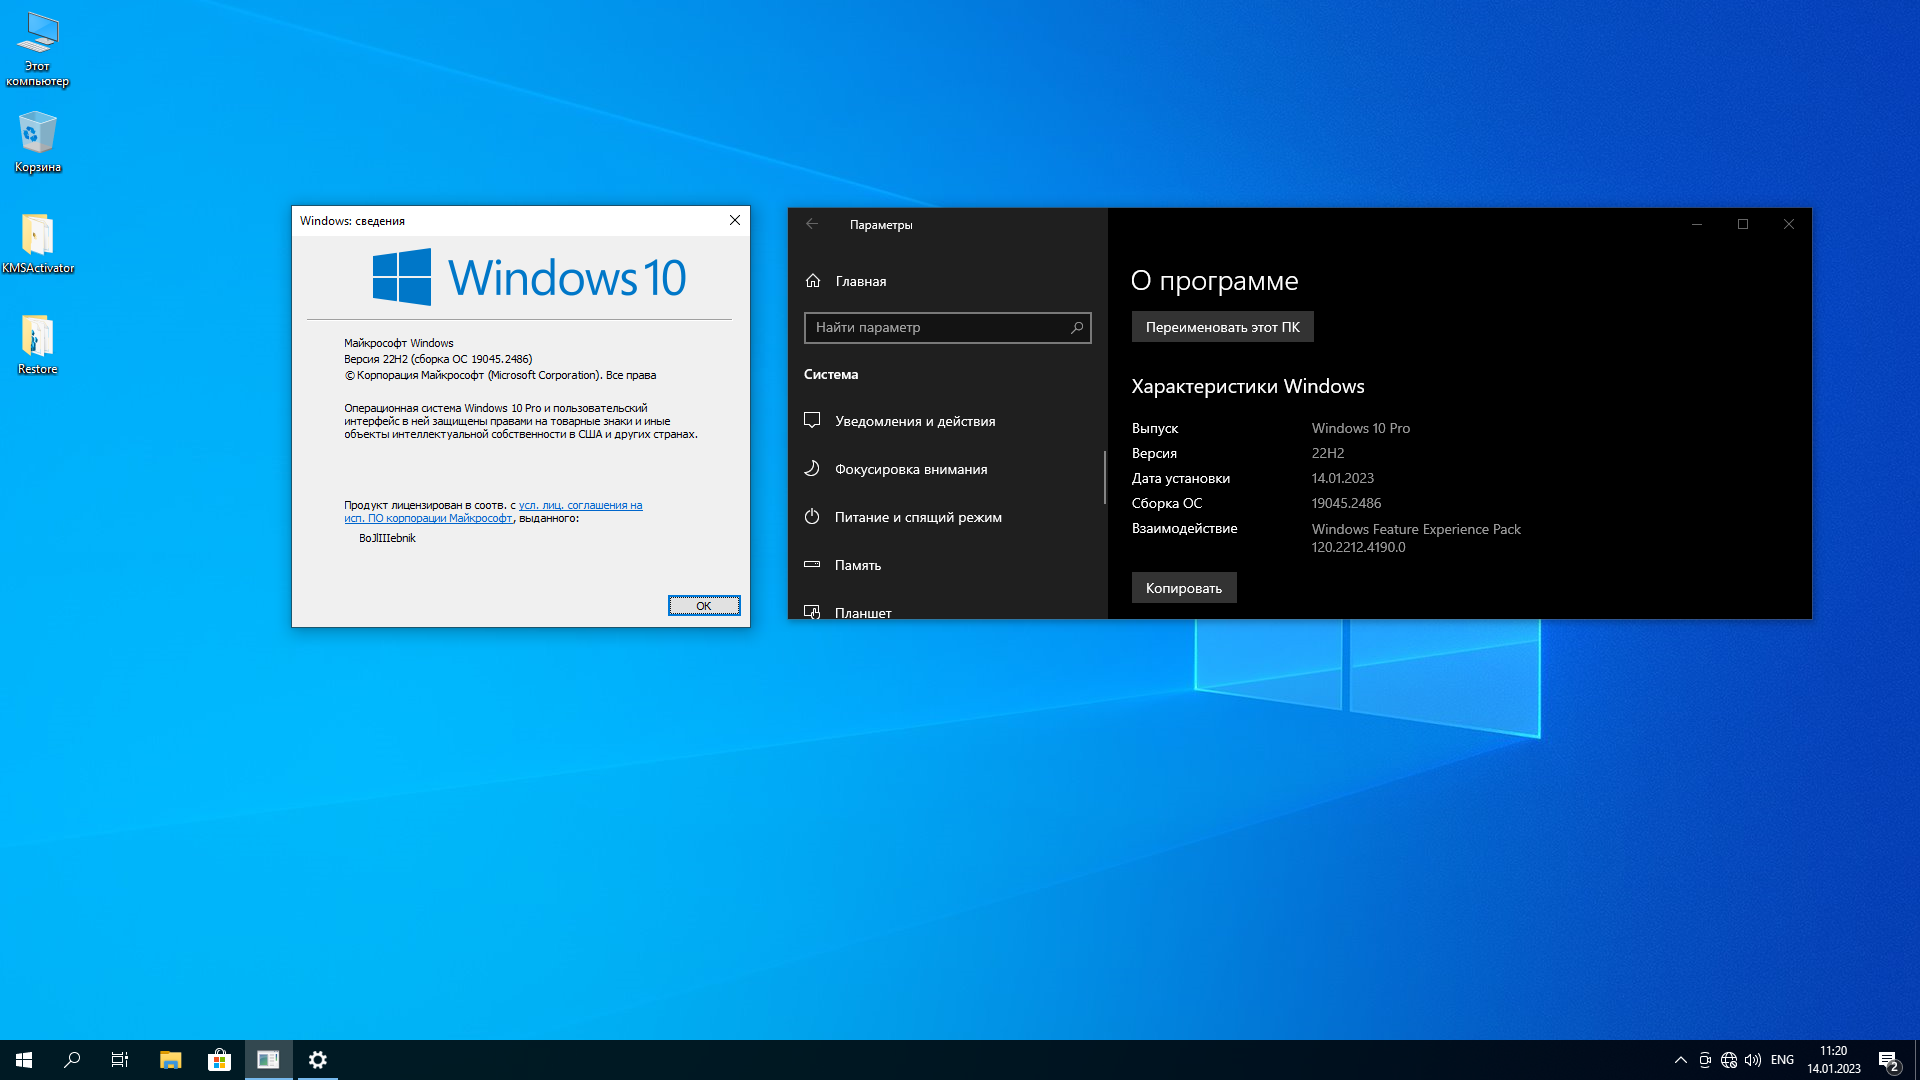 Бесплатная версия win 10 x64. Windows 10 версии. Windows 10 сборки. Виндовс 10 22h2. Windows 10 Pro 22h2.